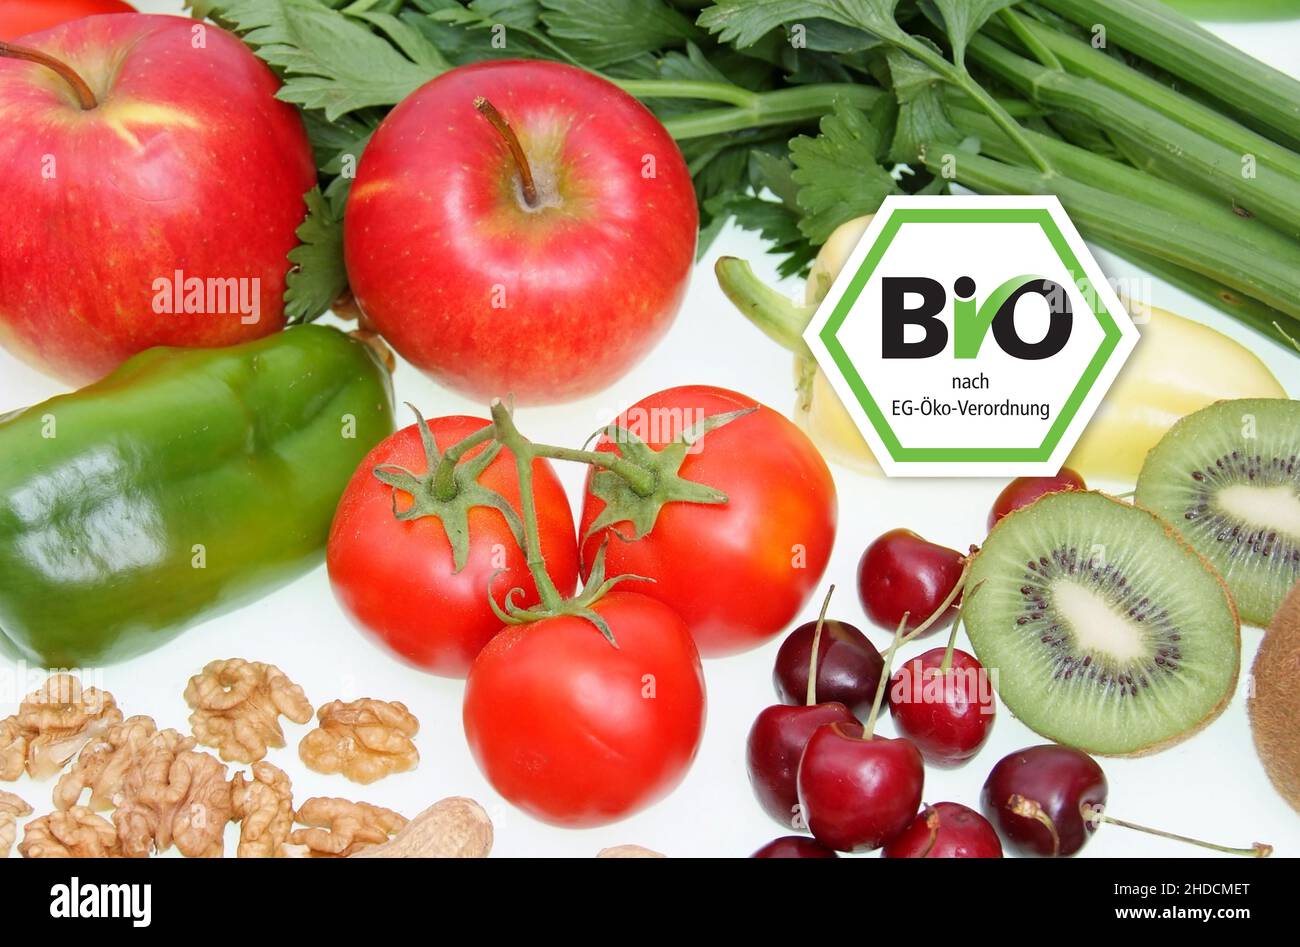 Symbolfoto gesunde Ernährung, Obst, Gemüse, Nüsse, Kirschen, Erdnüsse, Paproka, Tomaten, Rettich, Walnüsse, Kiwi, Apfel, BIO; Siegel, Bio-Siegel,  Näh Stock Photo